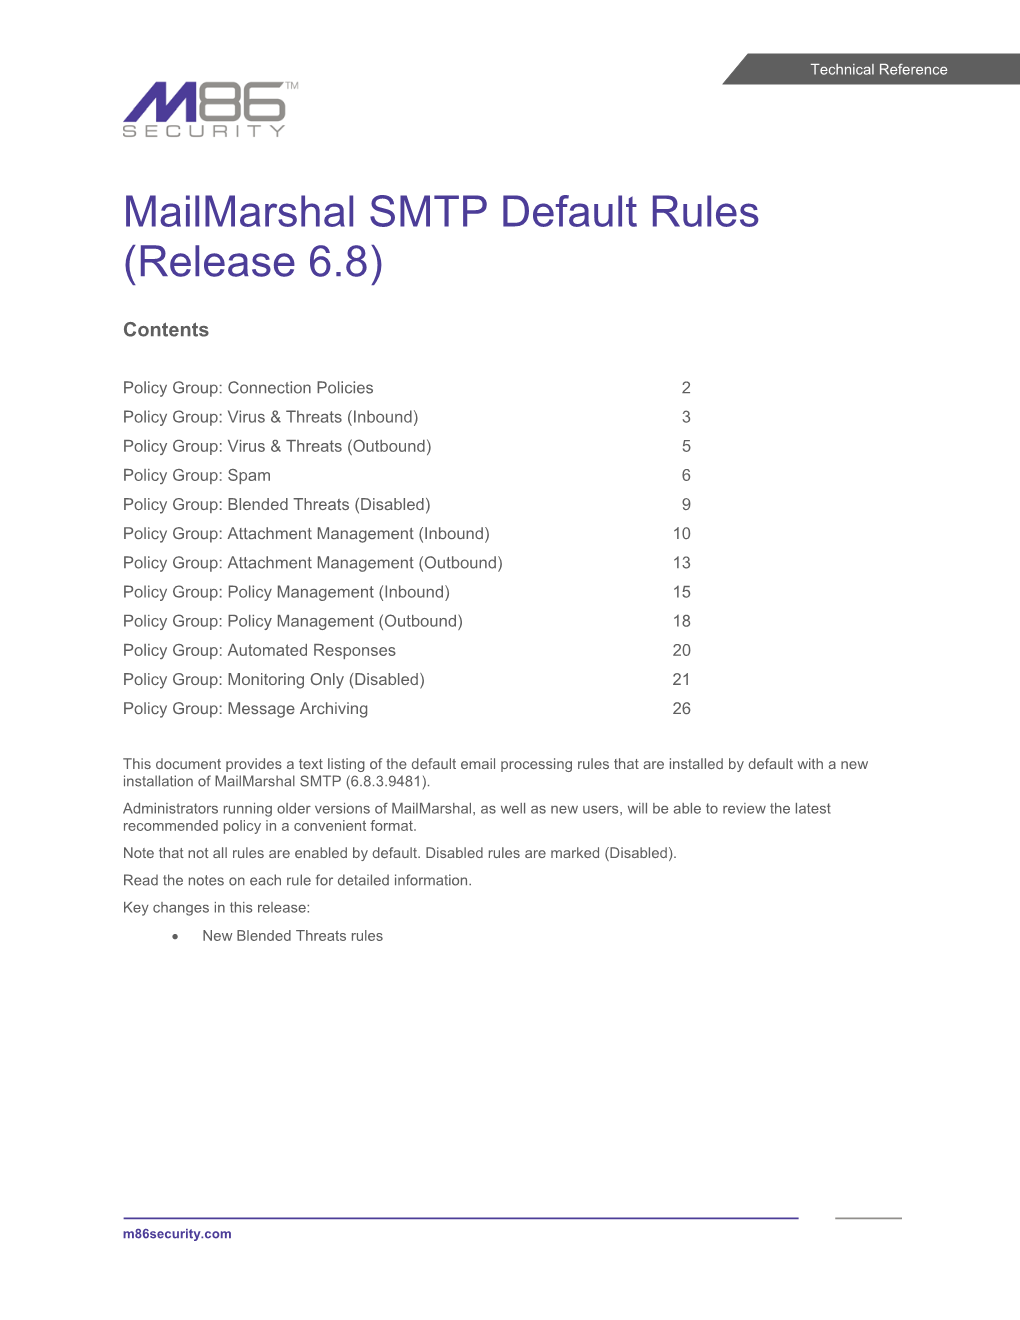 Mailmarshal Default Rules